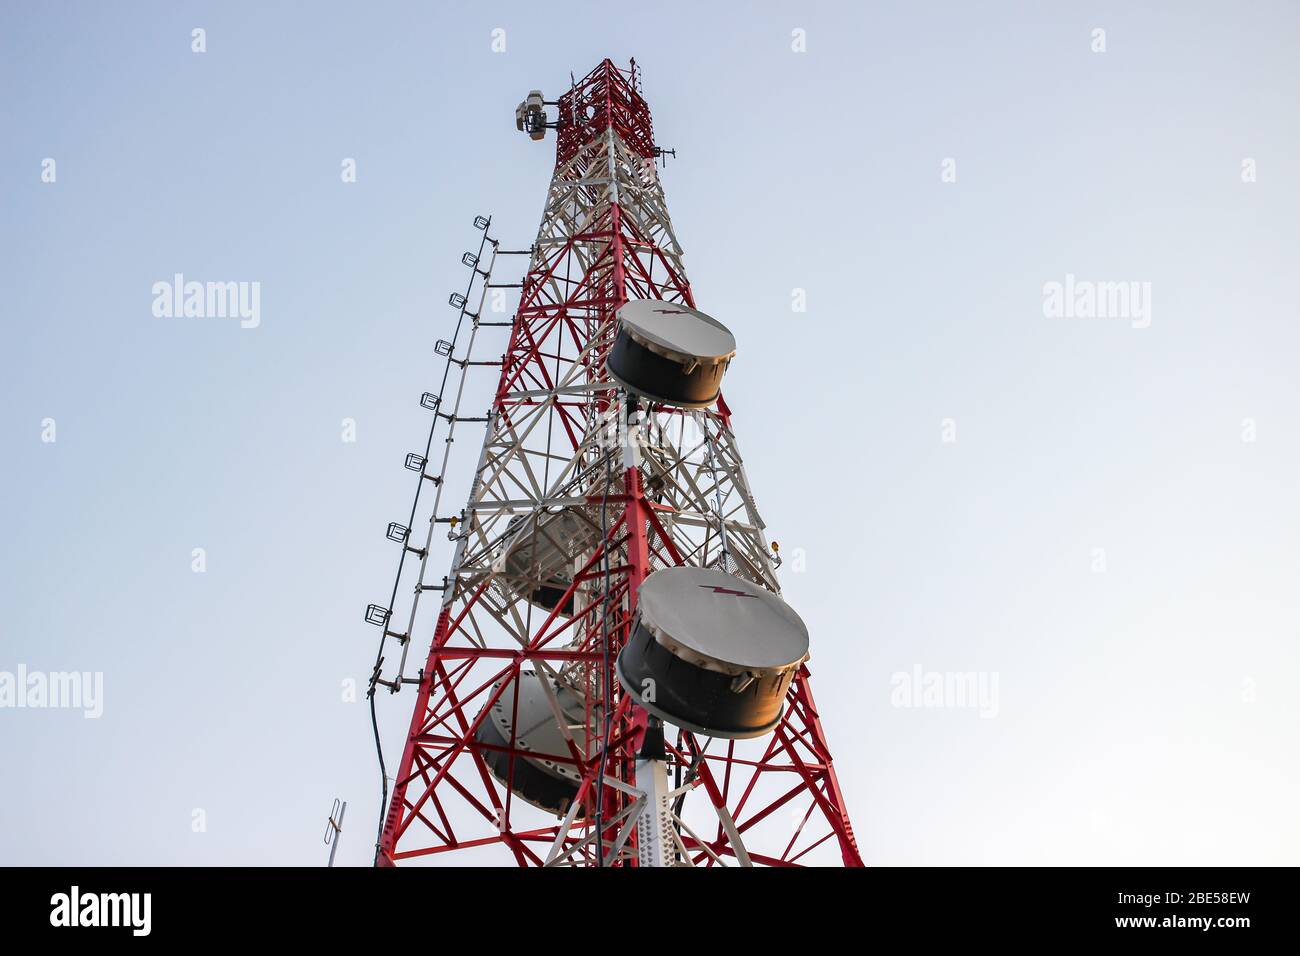 Basisstation oder Basisstation mit Mobilfunk. Telekommunikationsturm. Sender Für Drahtlose Kommunikationsantenne. 3G-, 4G- und 5G-Mobilfunkstandort. Stockfoto